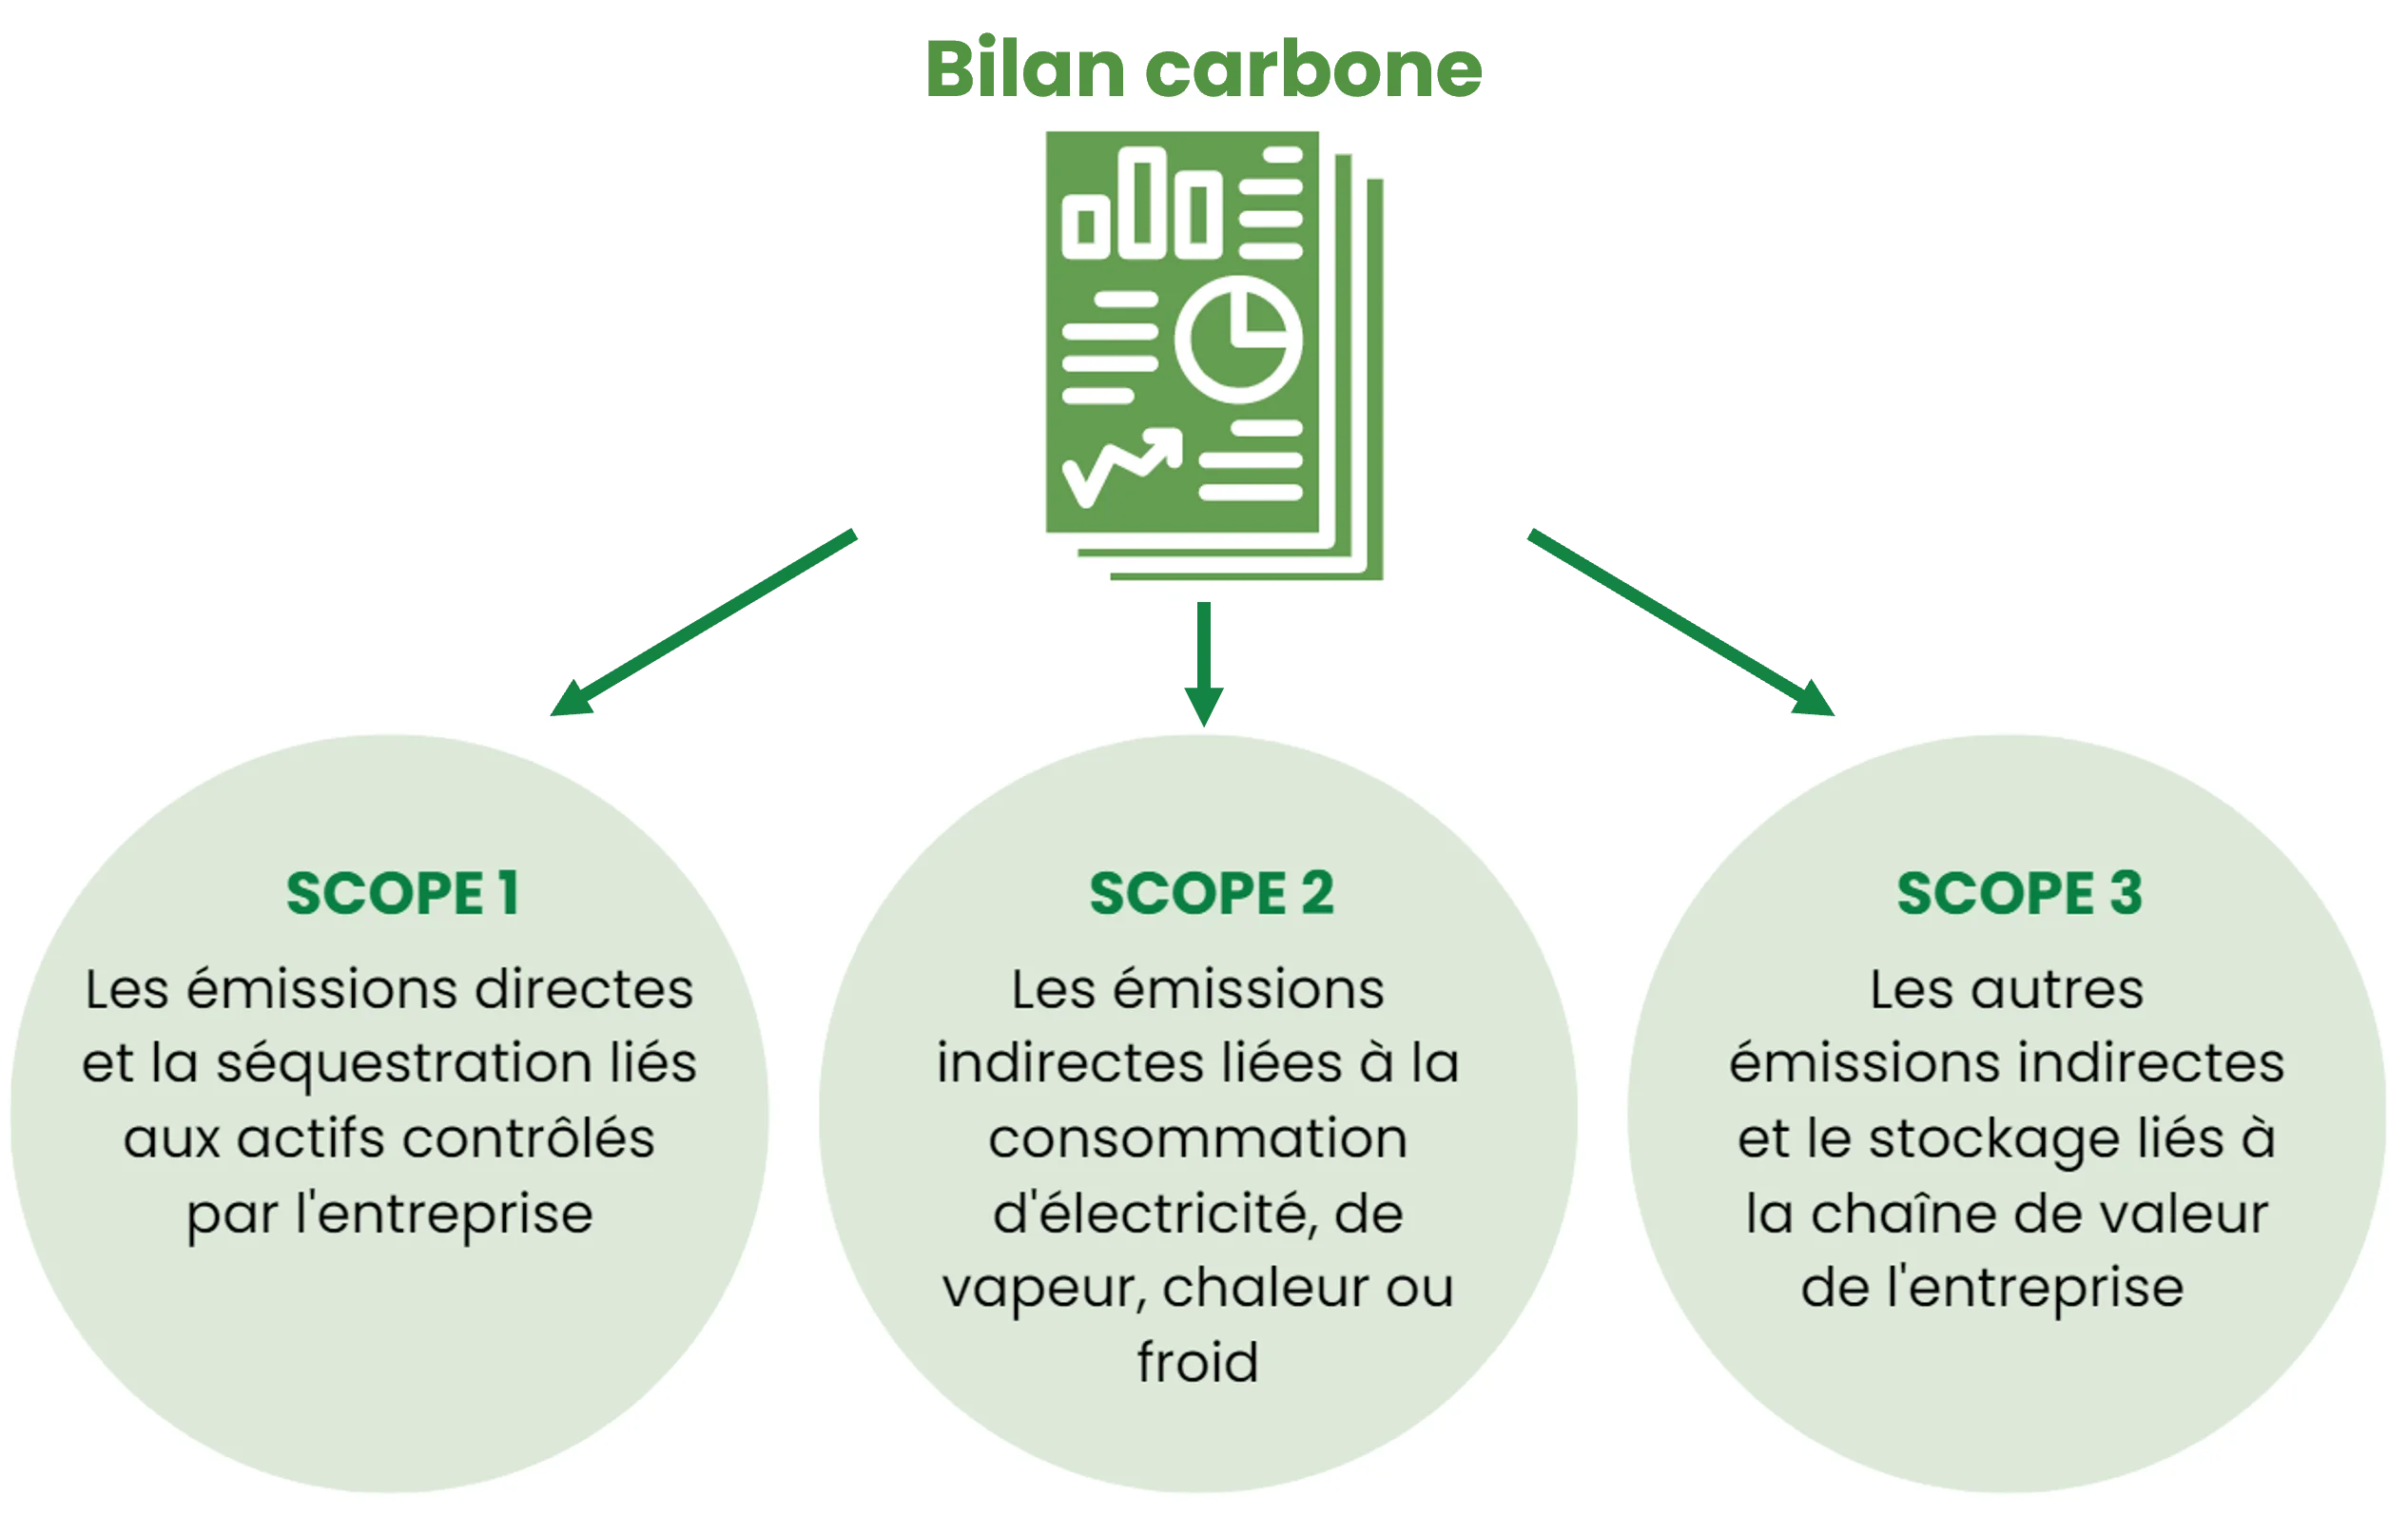 Le GHG protocol permet de découper les activités en 3 Scopes qui définissent la chaine de valeur de l'entreprise